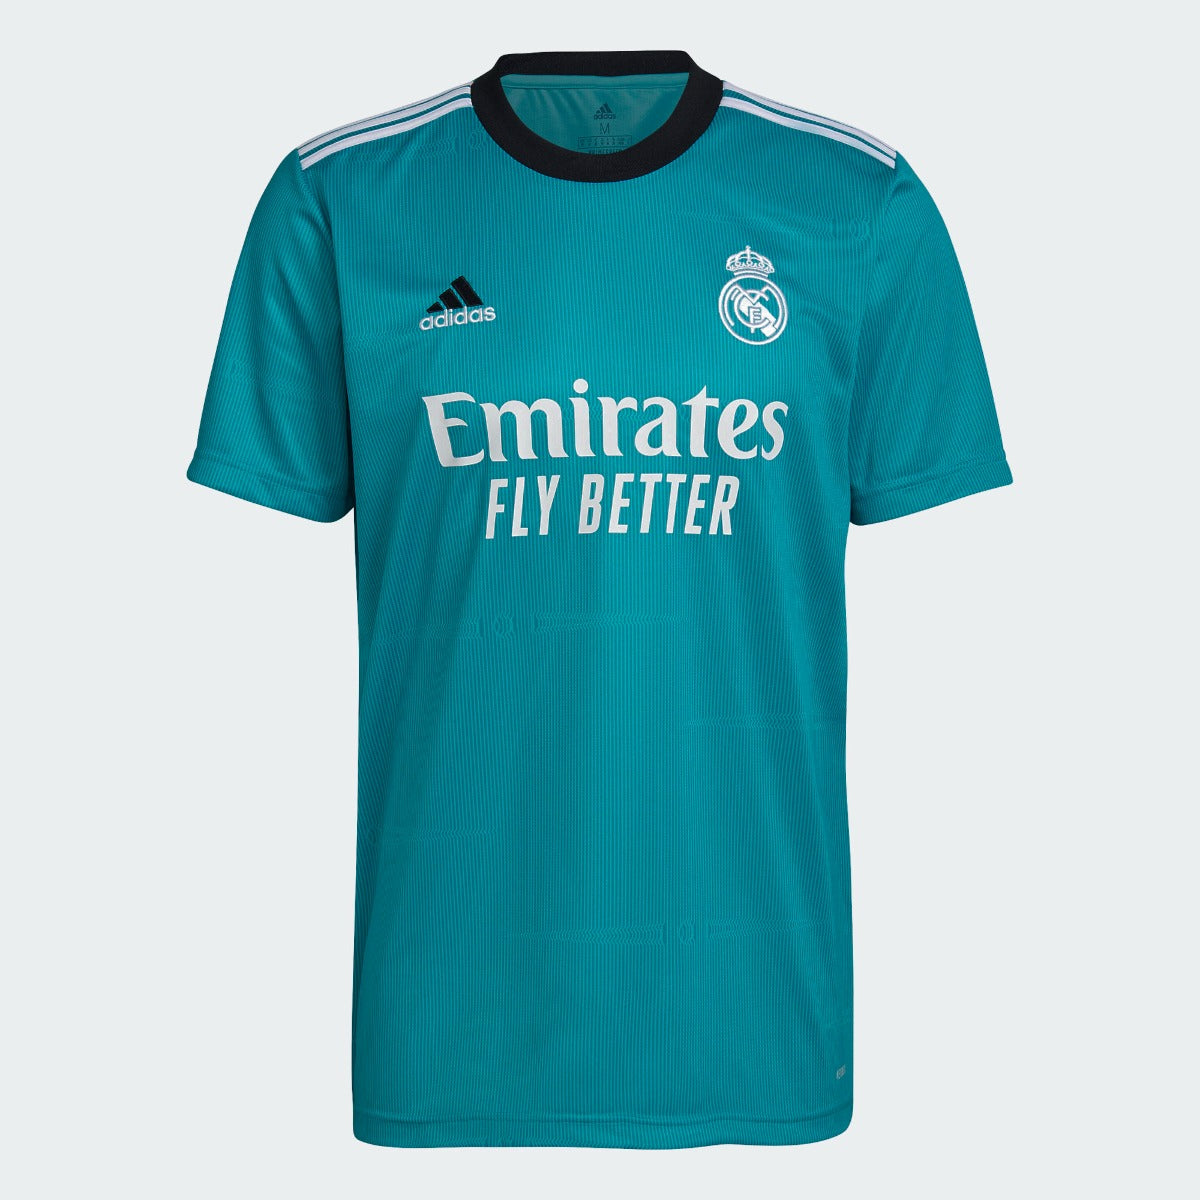 Adidas, Adidas 2021-22 Maglia Real Madrid - Hi Res Aqua